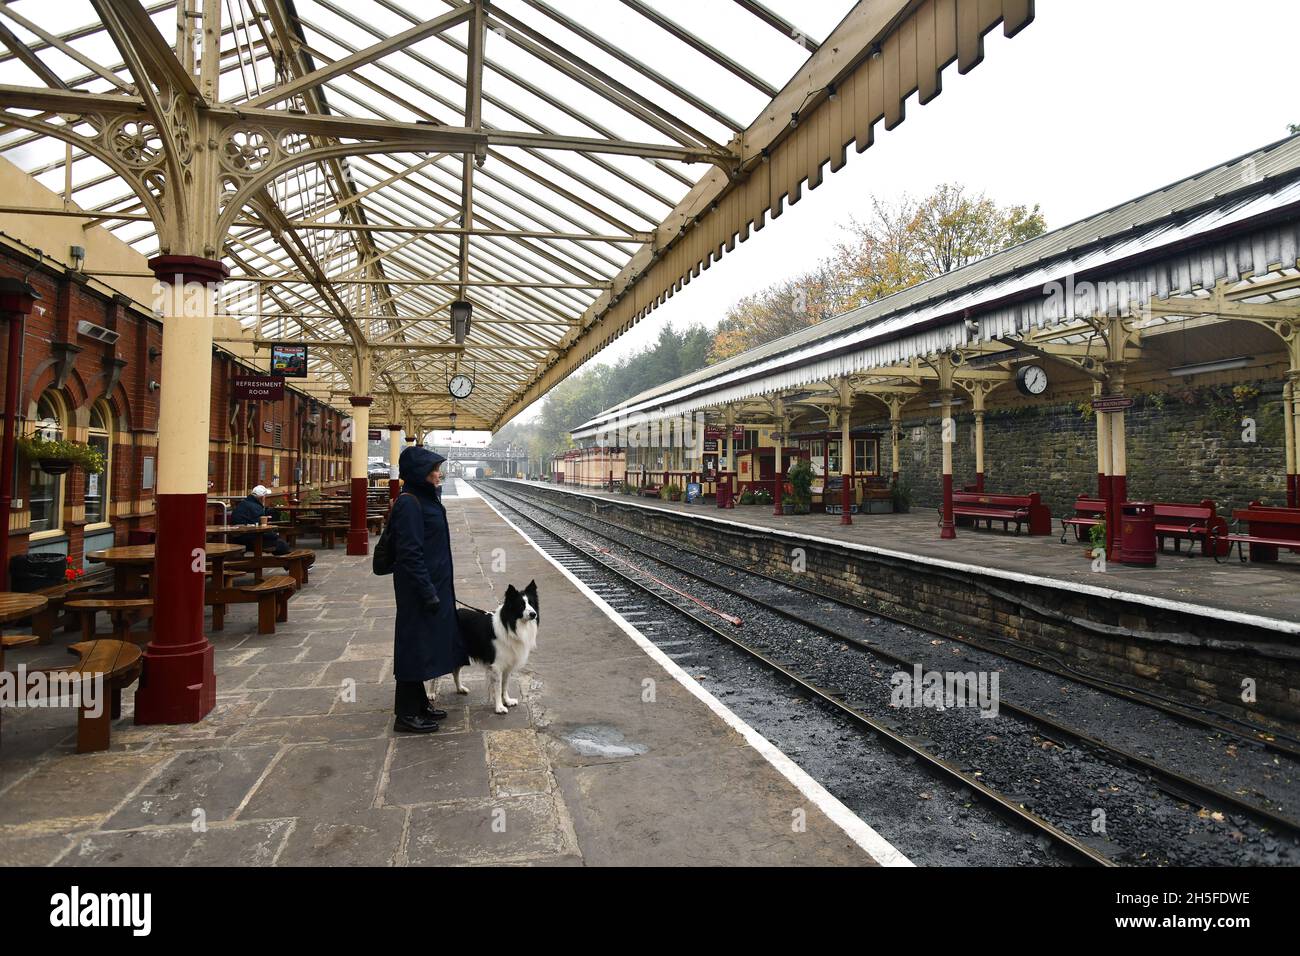 East Lancs Railway station at Bury, Lancashire, Britain, Uk Stock Photo